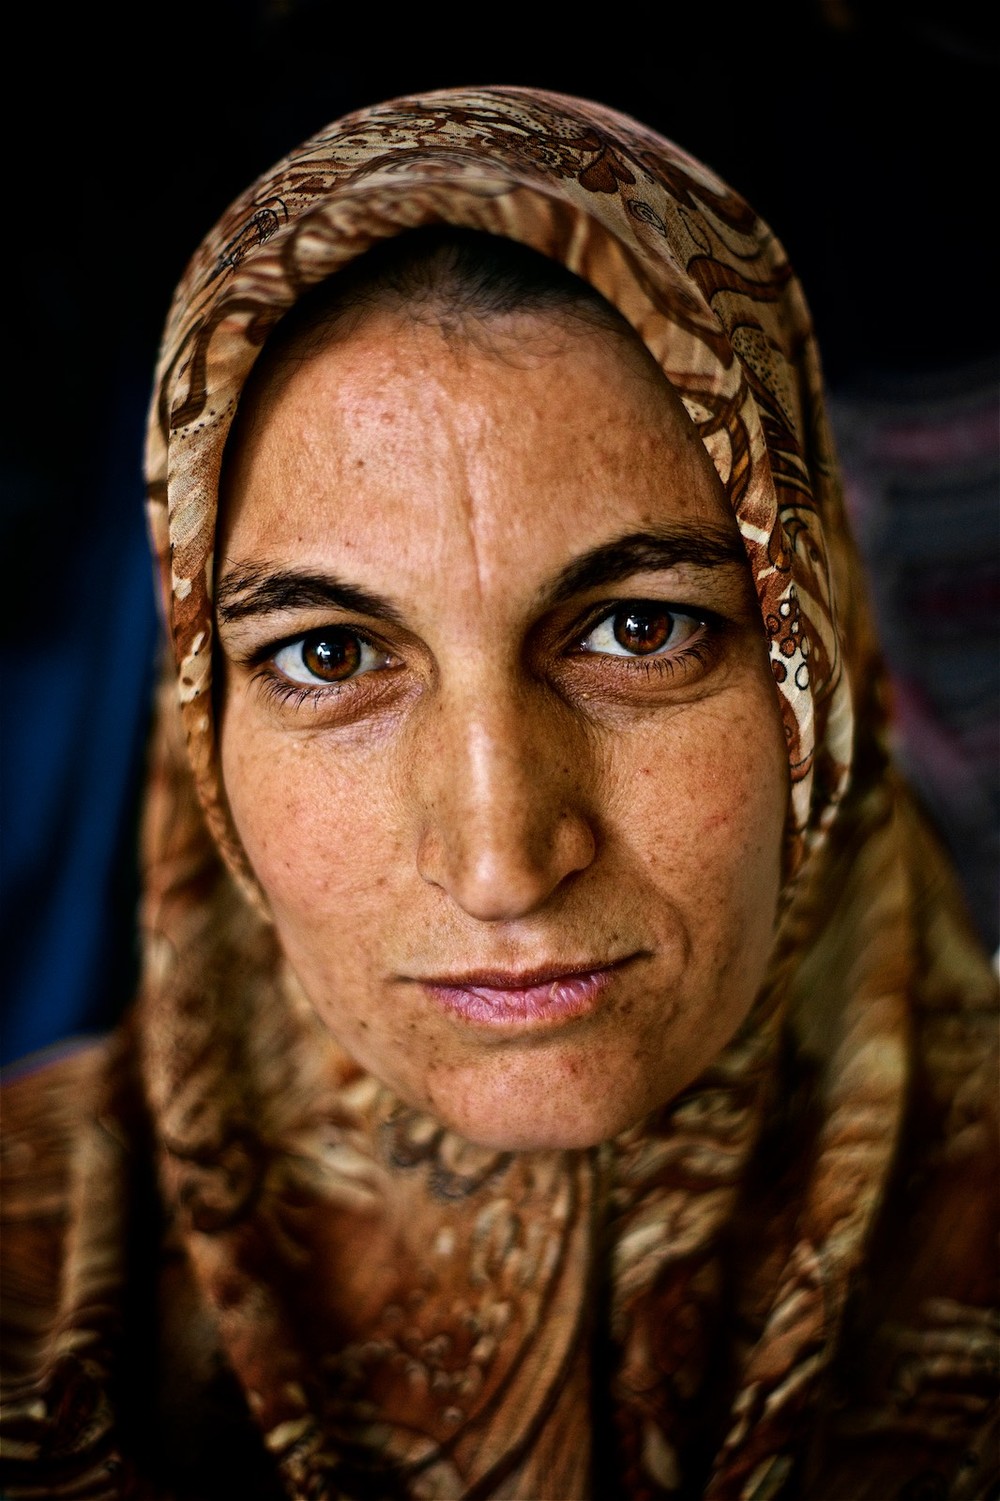  Shayma je mladá, má len niečo cez tridsať, ale tri roky v tábore na jej tvári zanechali hlboké stopy. (photo: Denis Bosnic) 